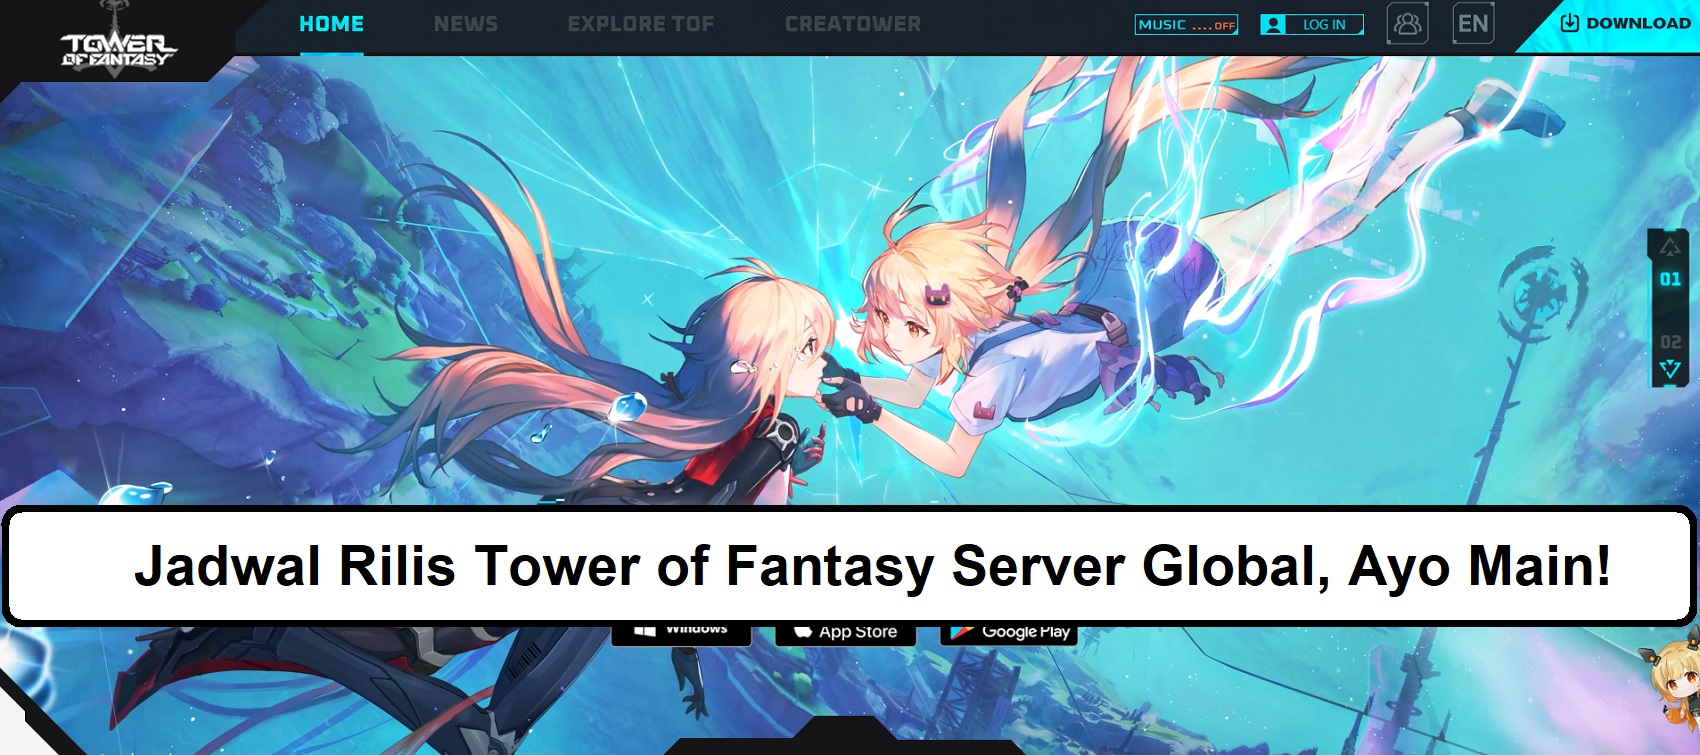 Jadwal Rilis Tower of Fantasy Server Global, Ayo Main!